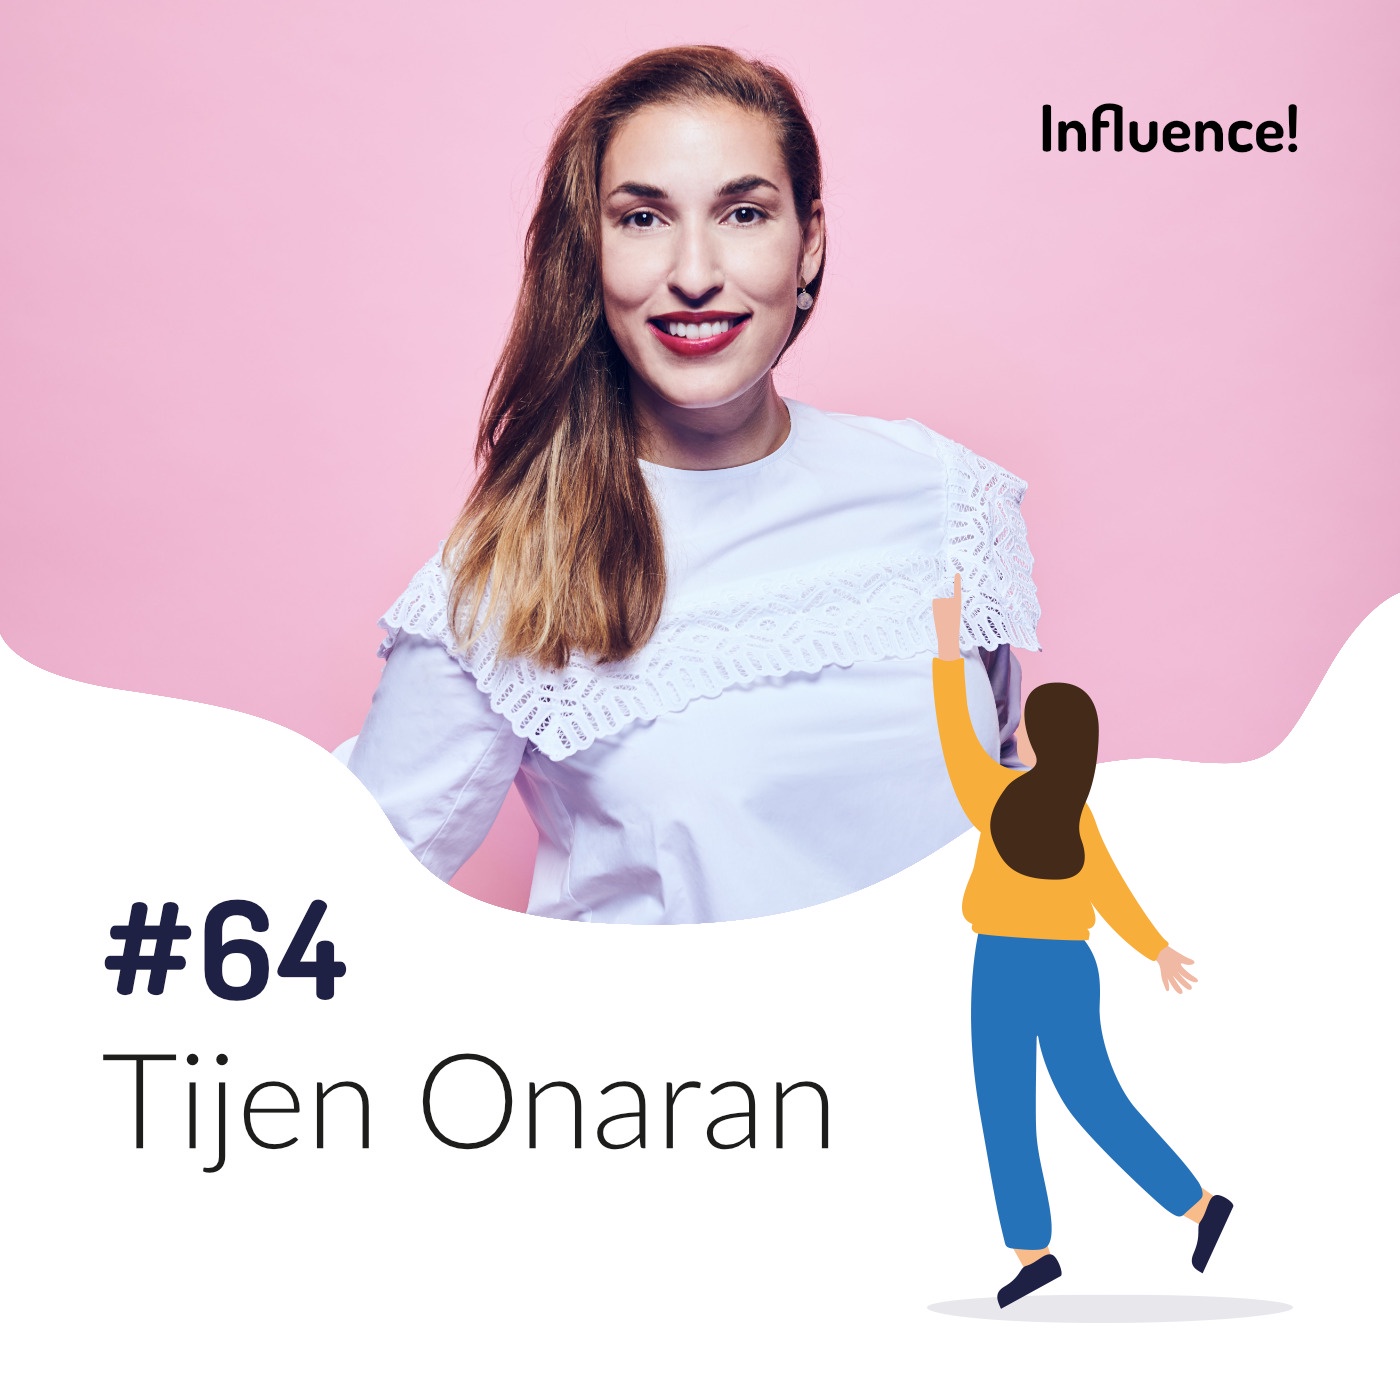 #64 | Tijen Onaran, wie wichtig ist Sichtbarkeit für die Karriere?